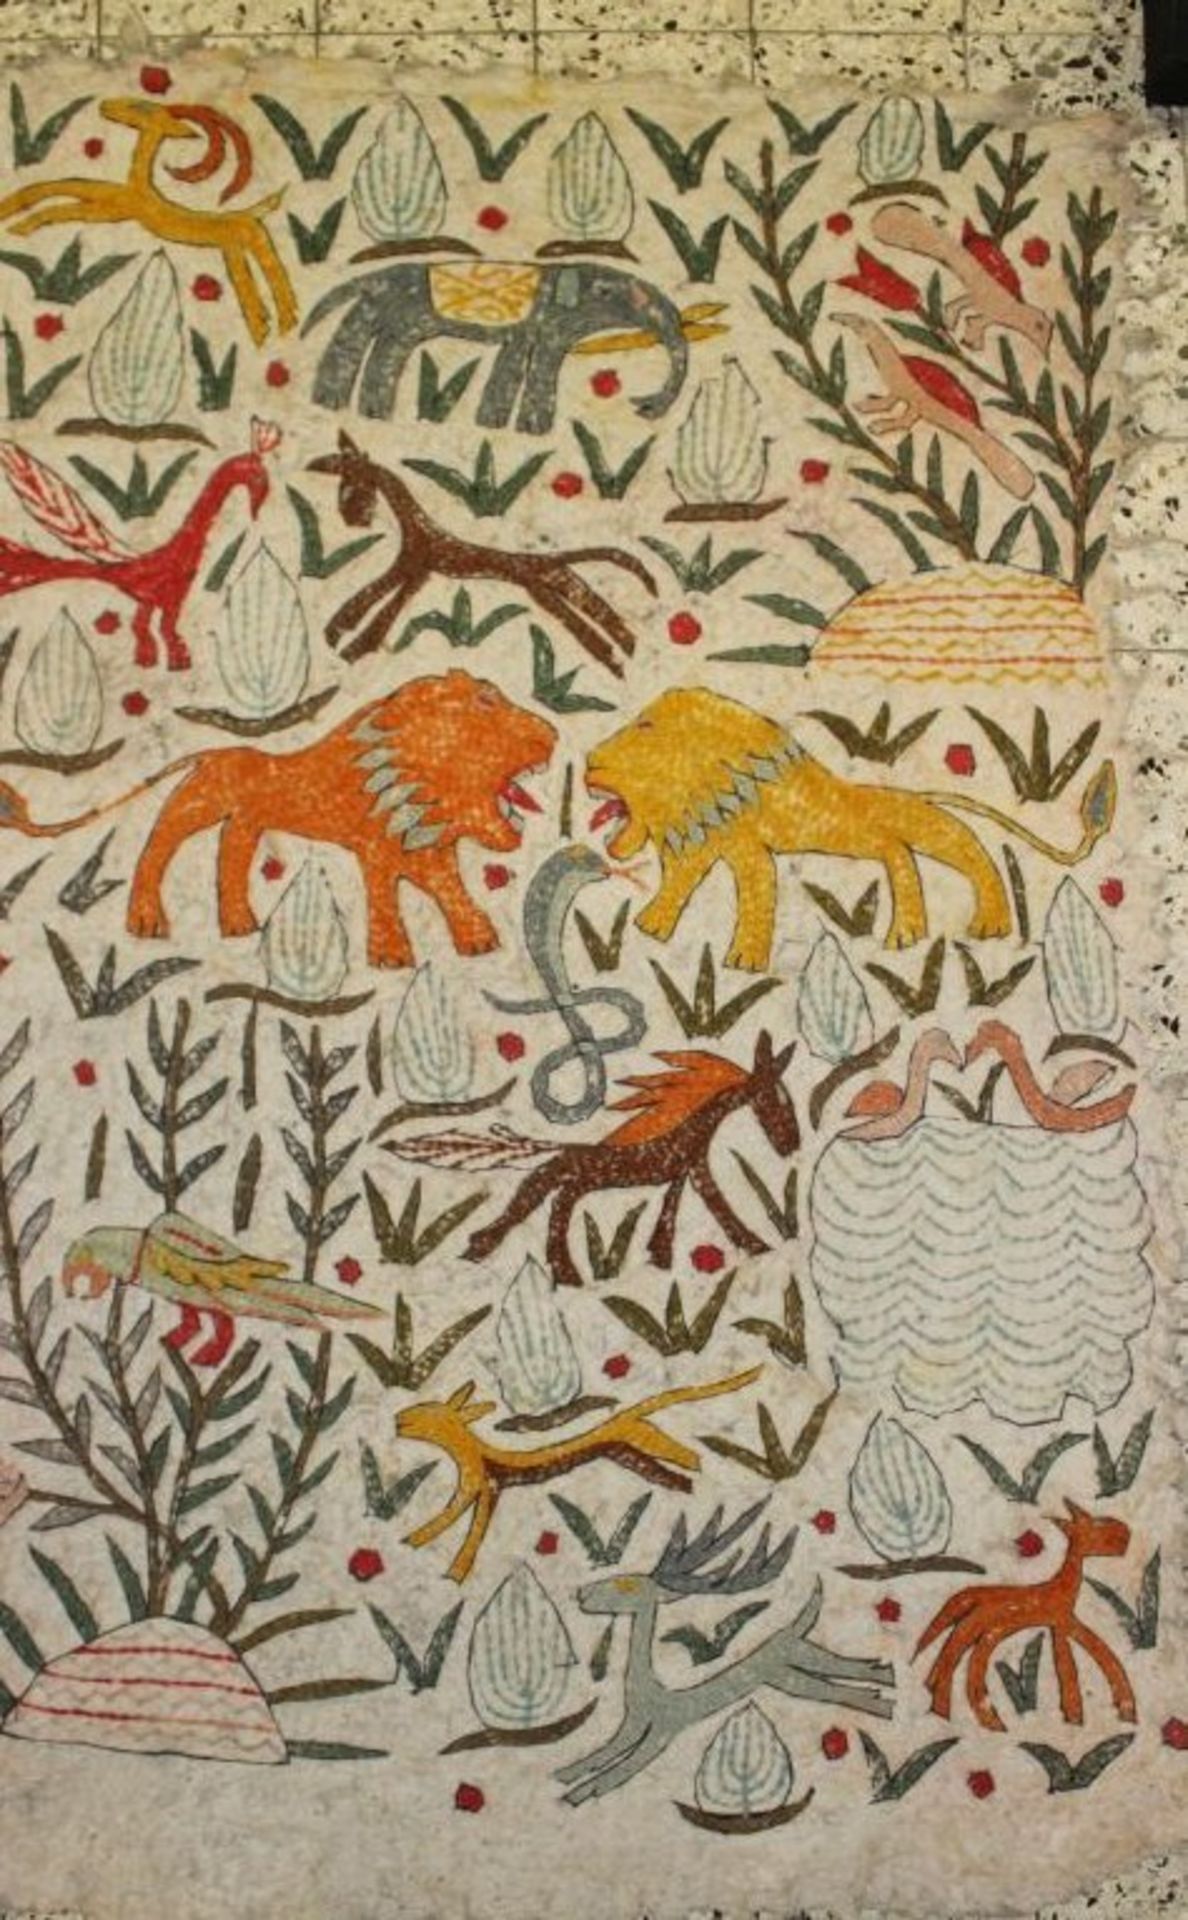 Wandteppich, wohl Asien, bestickt mit Tiermotiven, 1x kl. Loch, ca. 165 x 110cm.